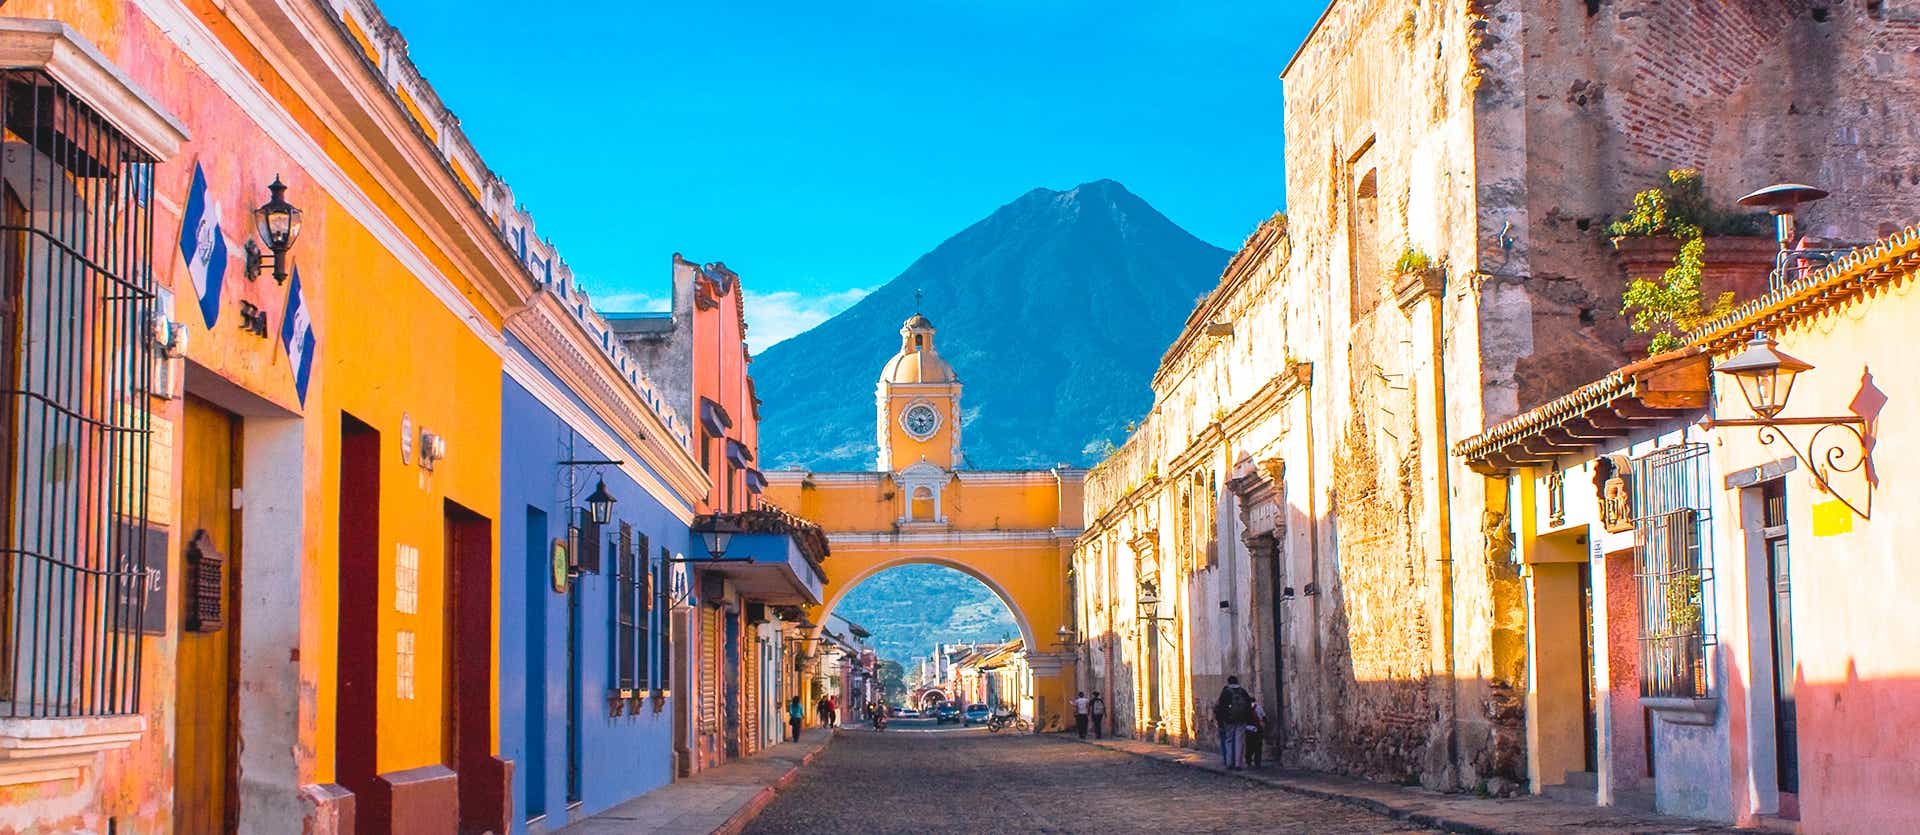 Arco de Santa Catalina <span class="iconos separador"></span> Antigua Guatemala <span class="iconos separador"></span> Guatemala